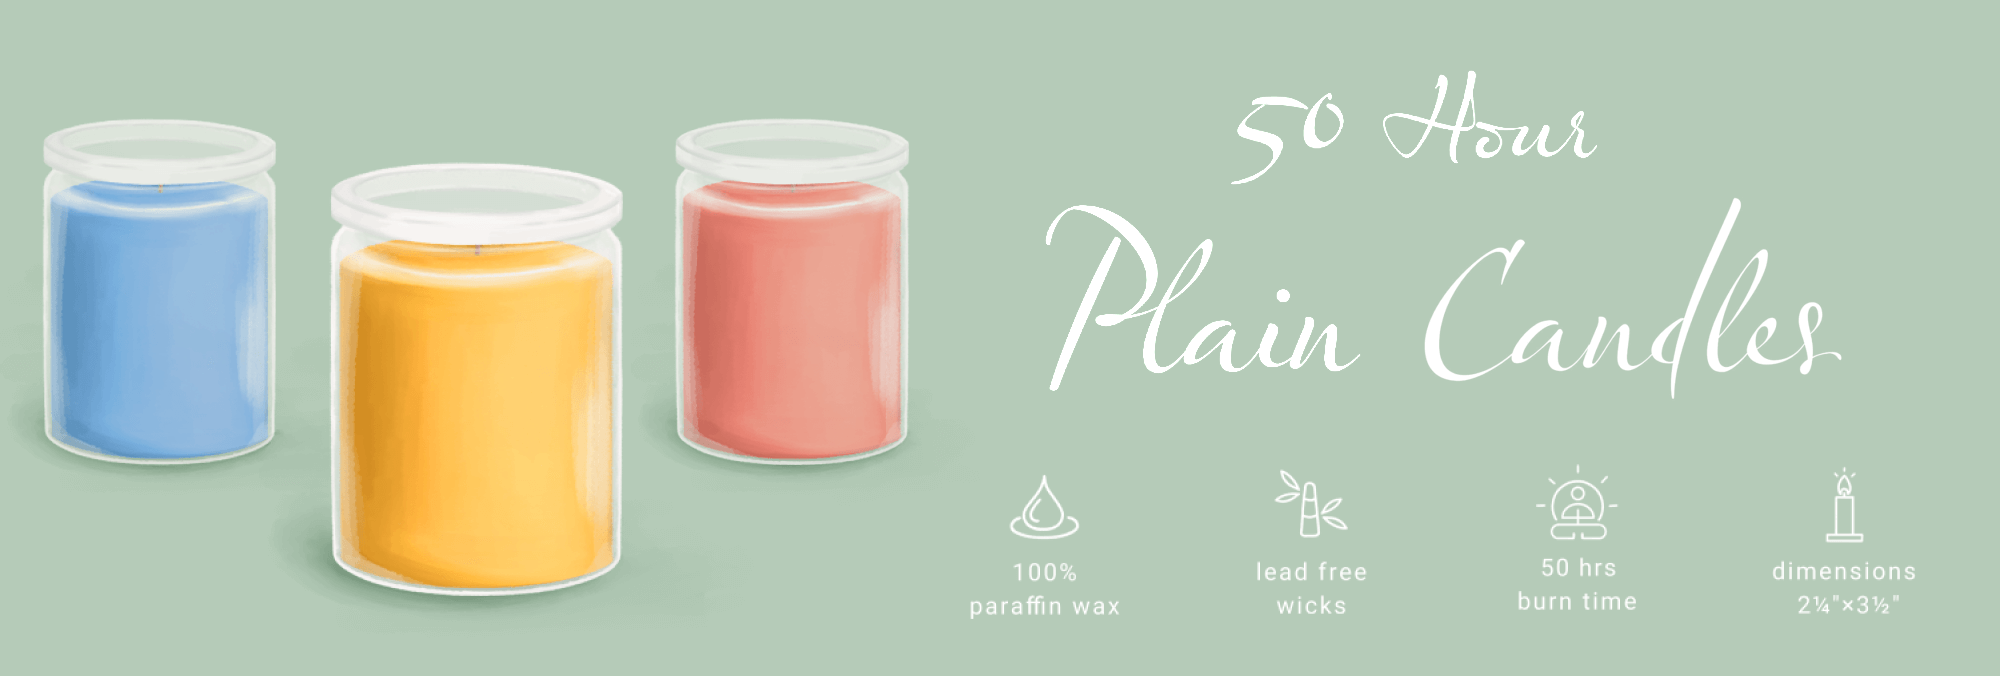 50 Hour Plain Candles